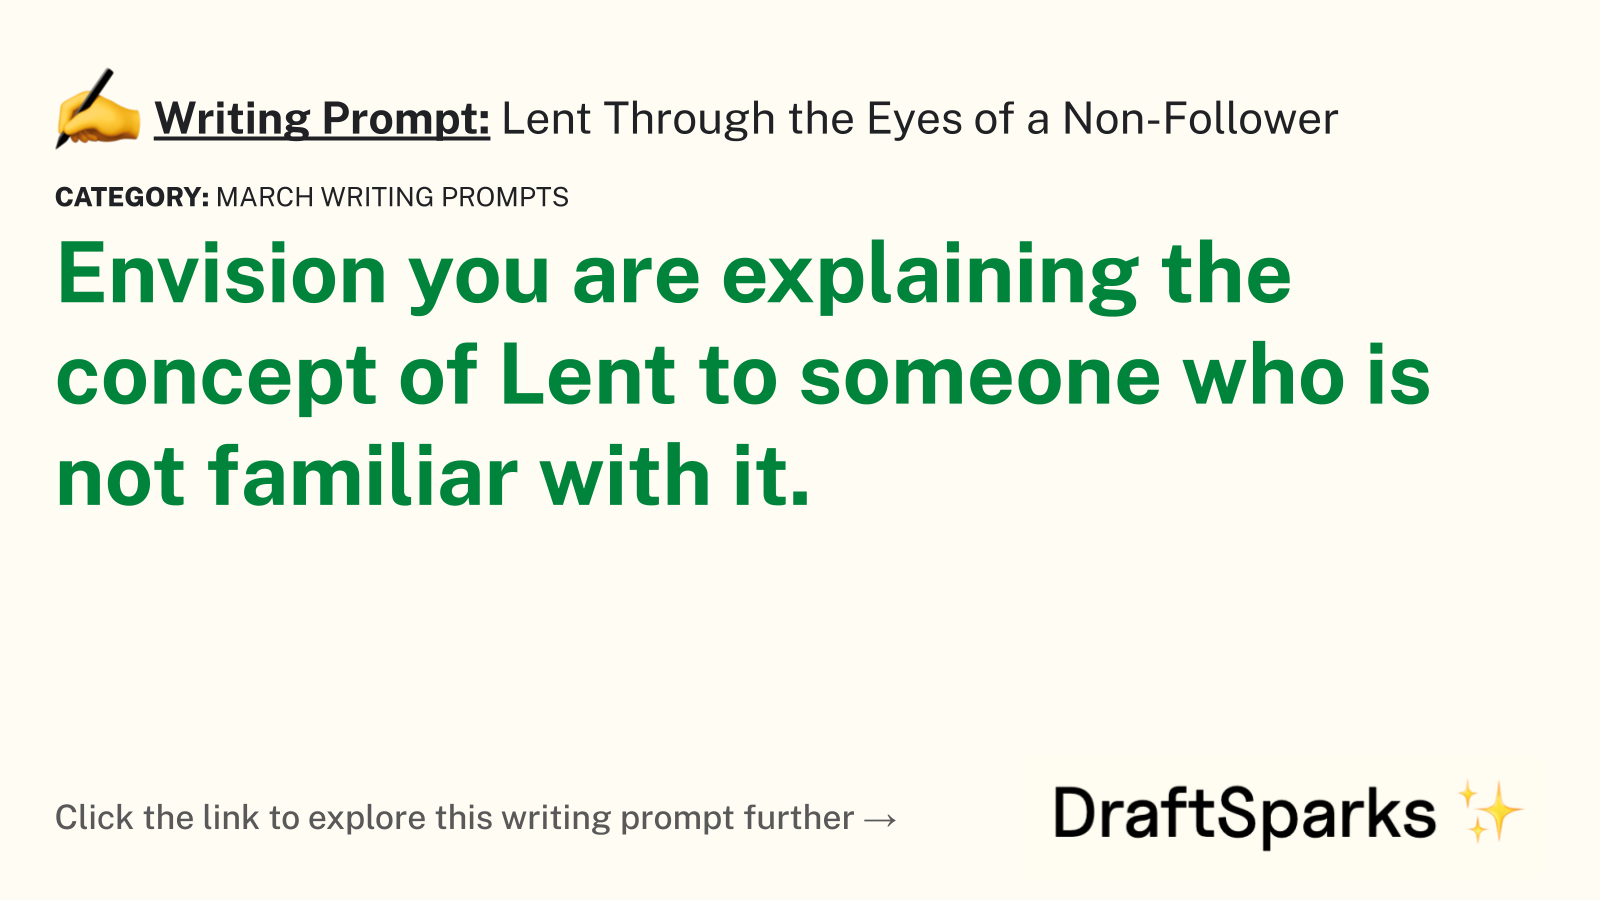 Lent Through the Eyes of a Non-Follower